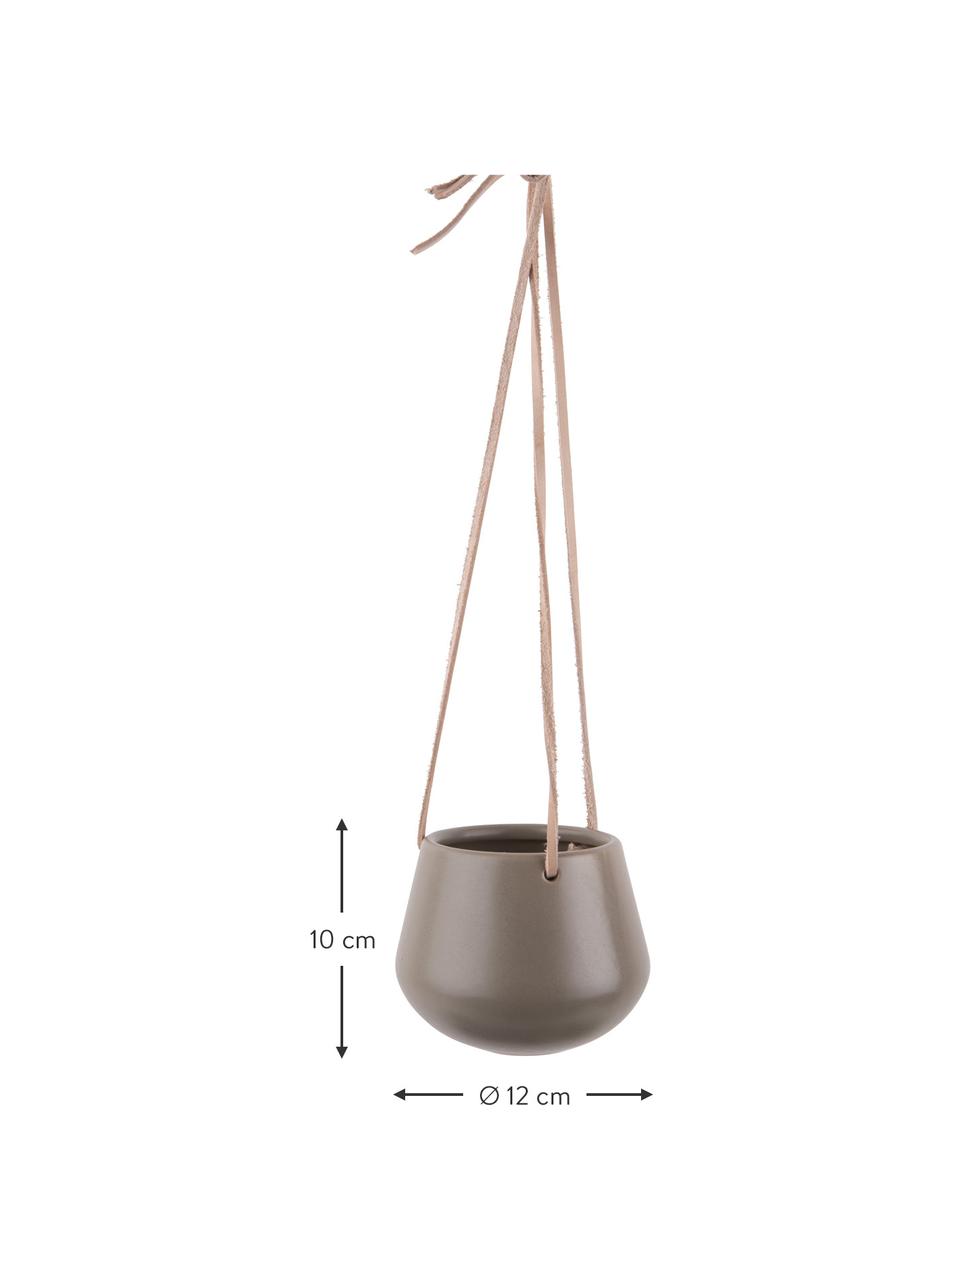 Cache-pot céramique à suspendre Skittle, Céramique, Gris, Ø 12 cm x haut. 10 cm